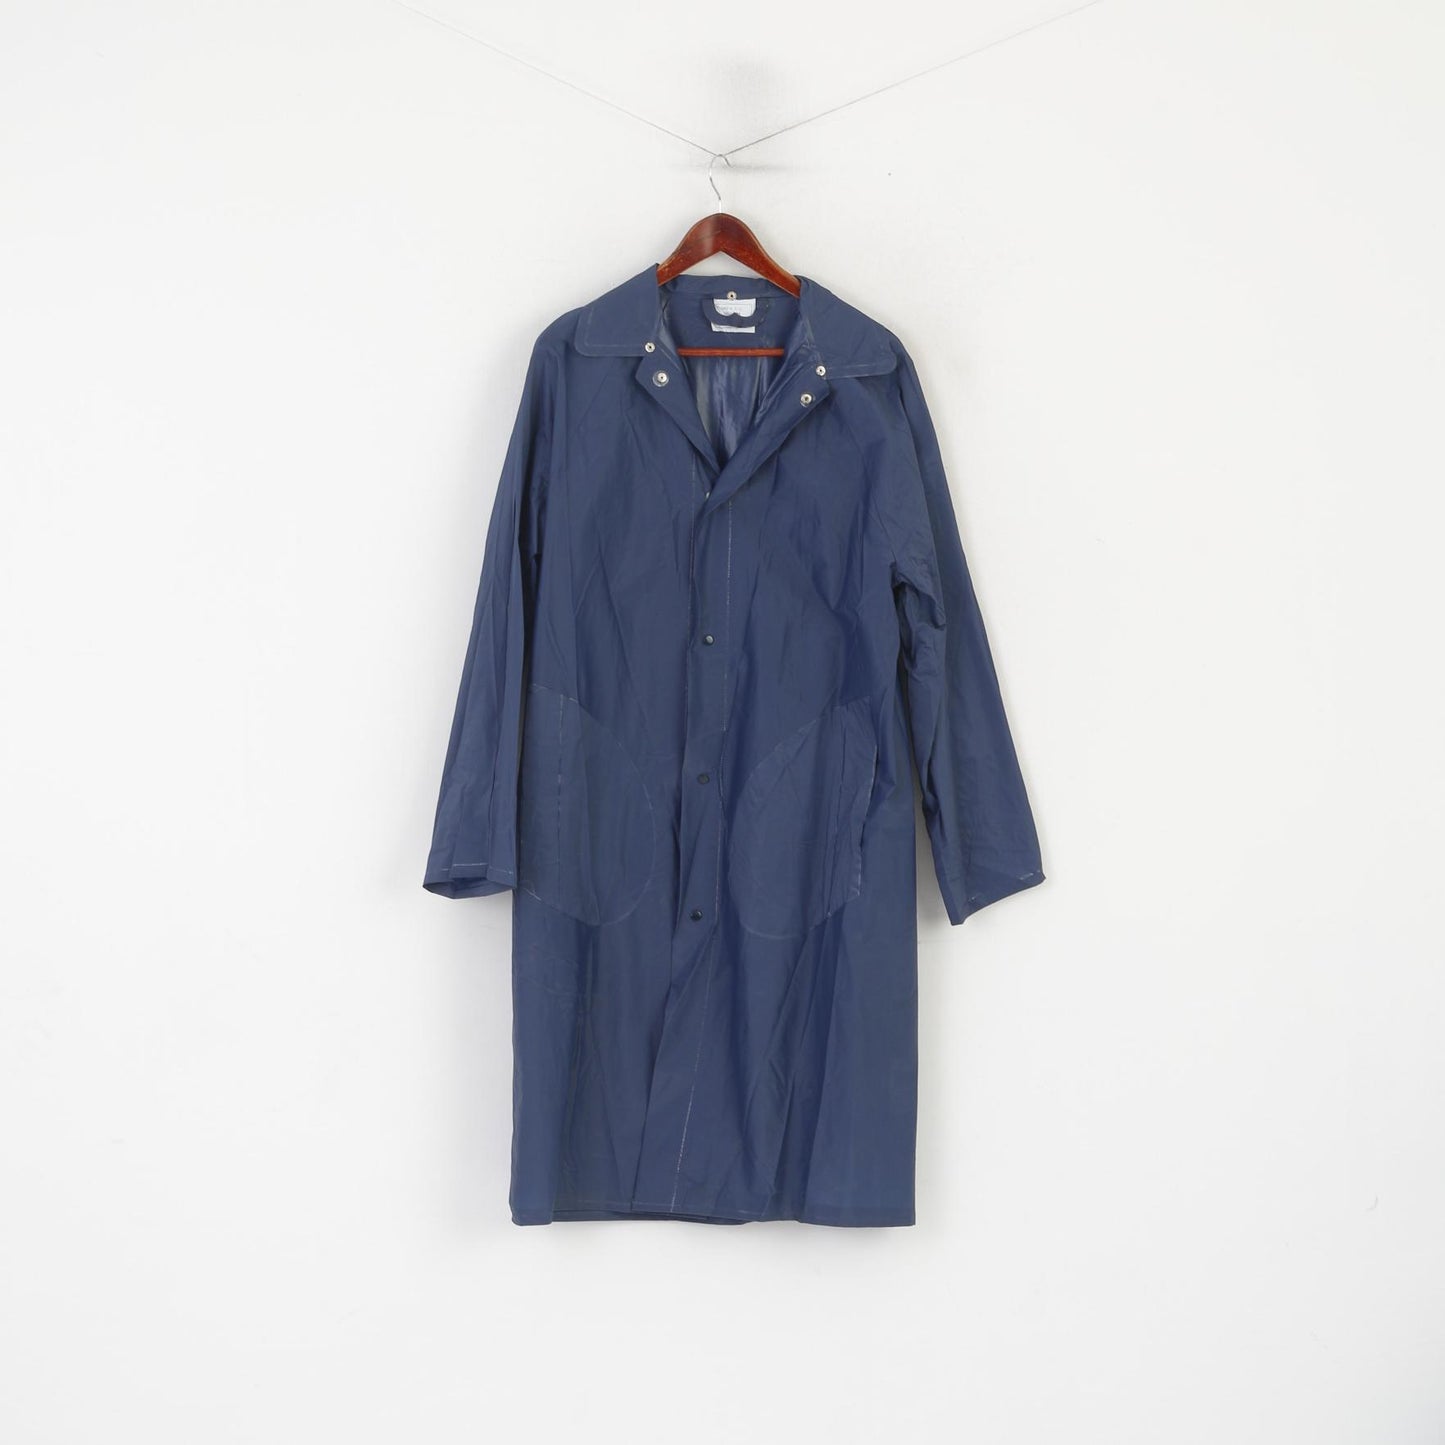 Cappotto antipioggia vintage da donna M blu scuro 100% PVC impermeabile con chiusura a scatto lunga